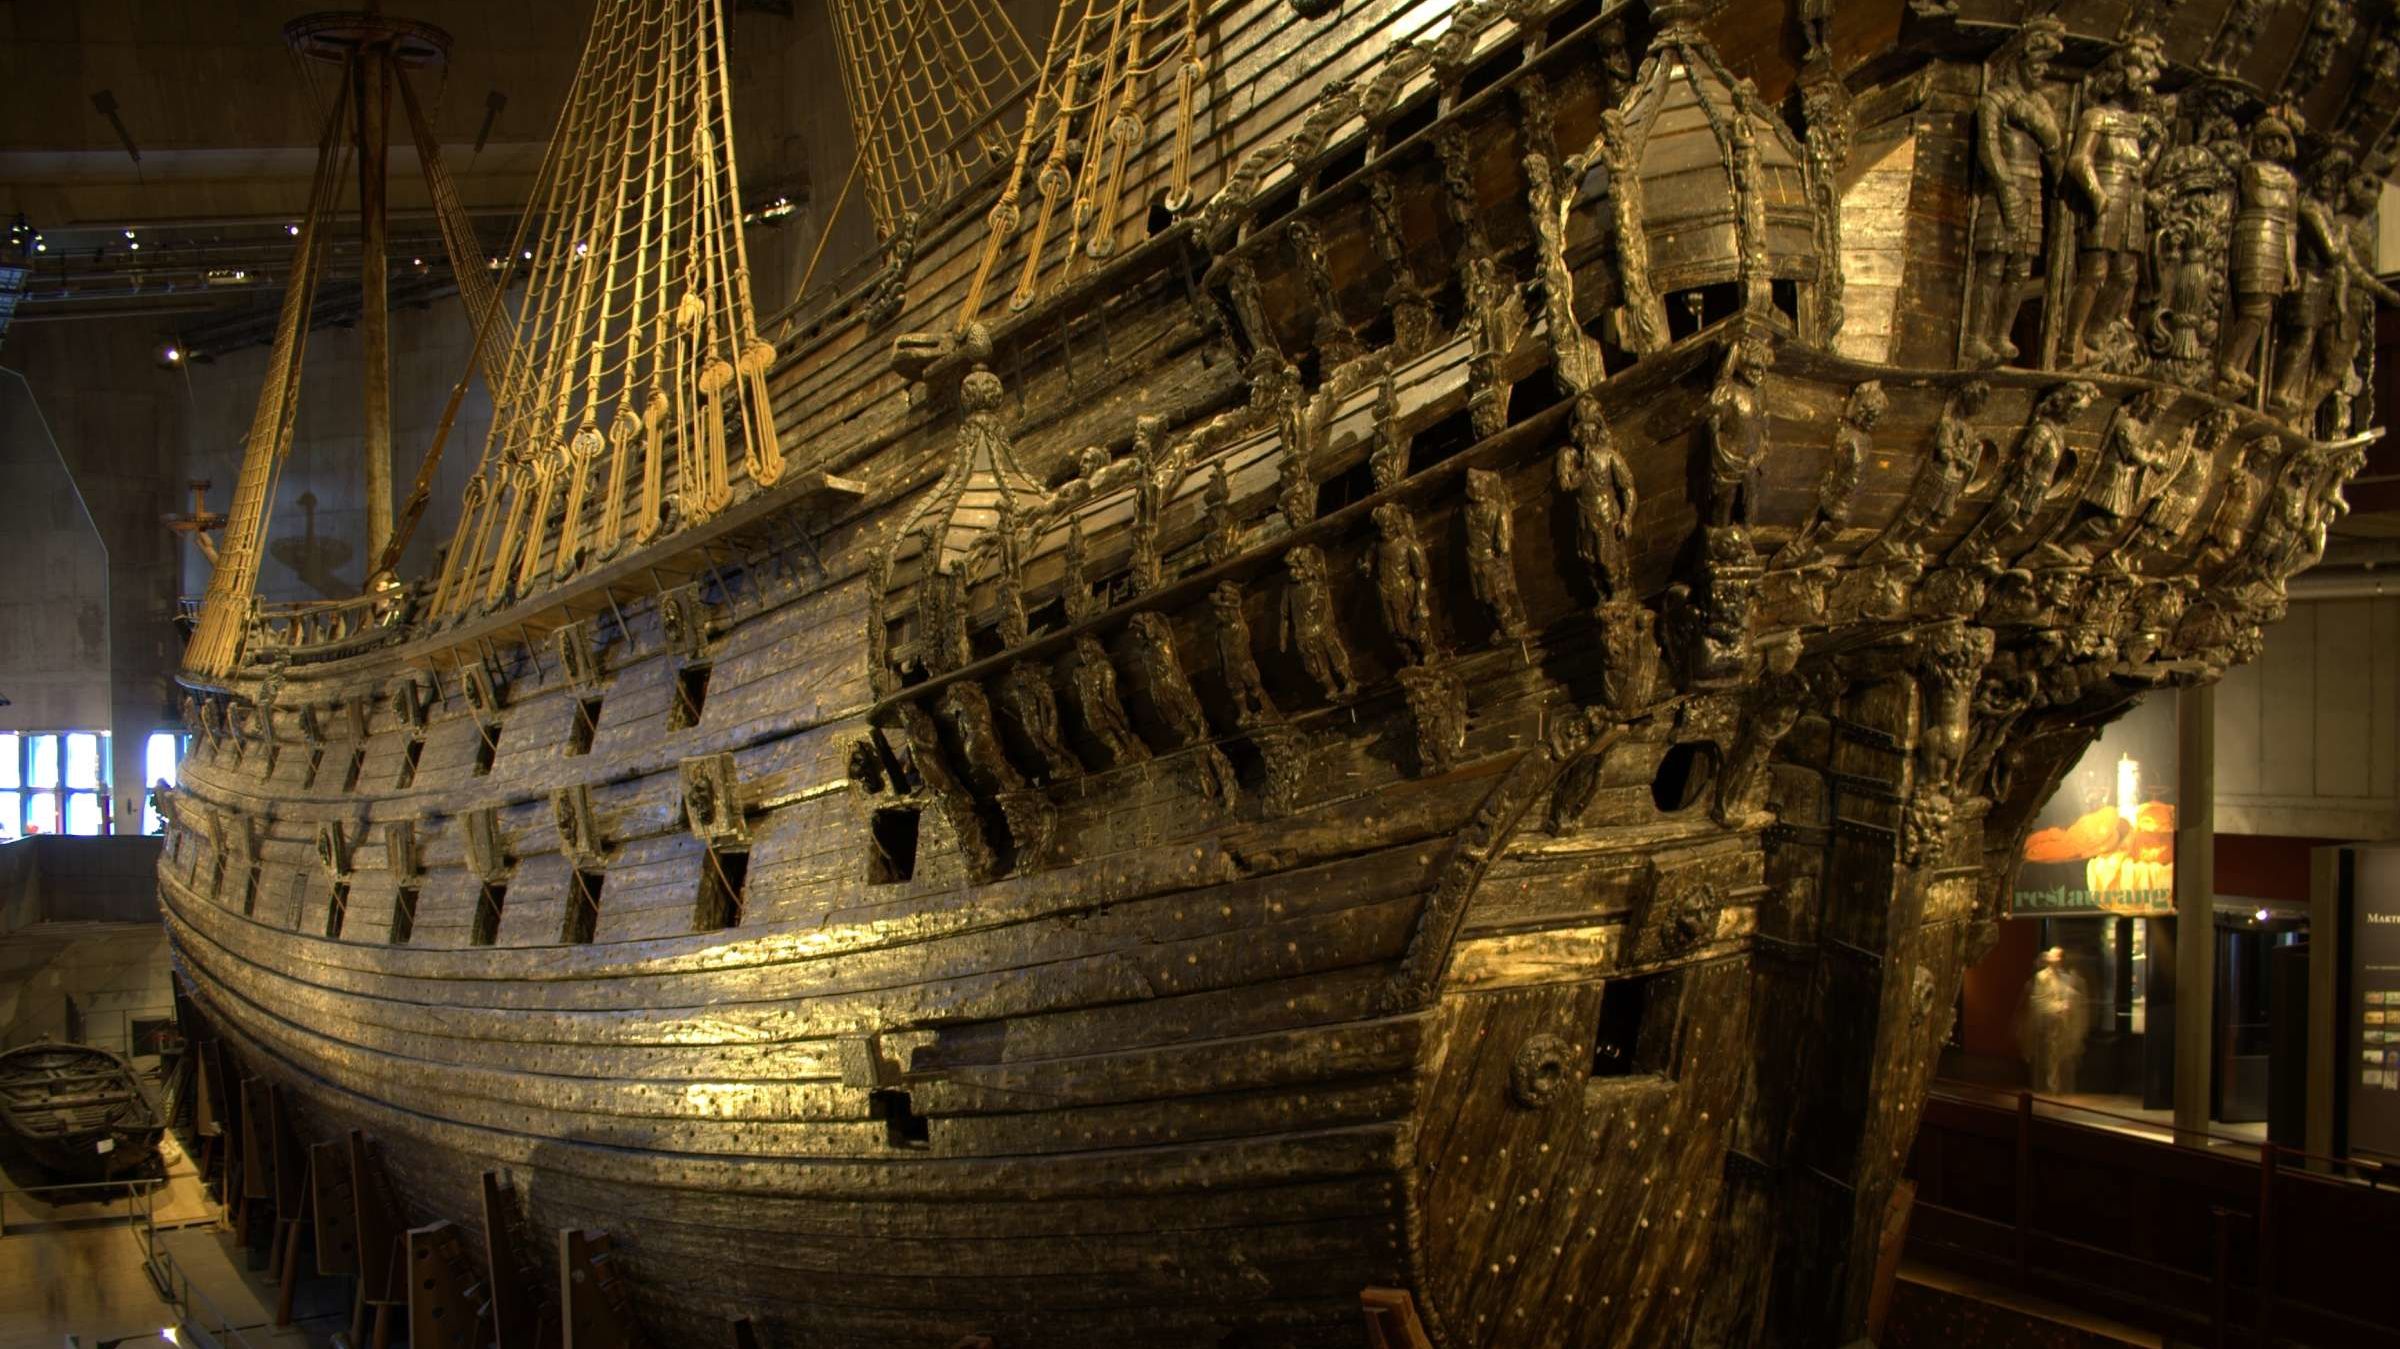 スウェーデンの難破船は Vasa に関連付けられている可能性があります